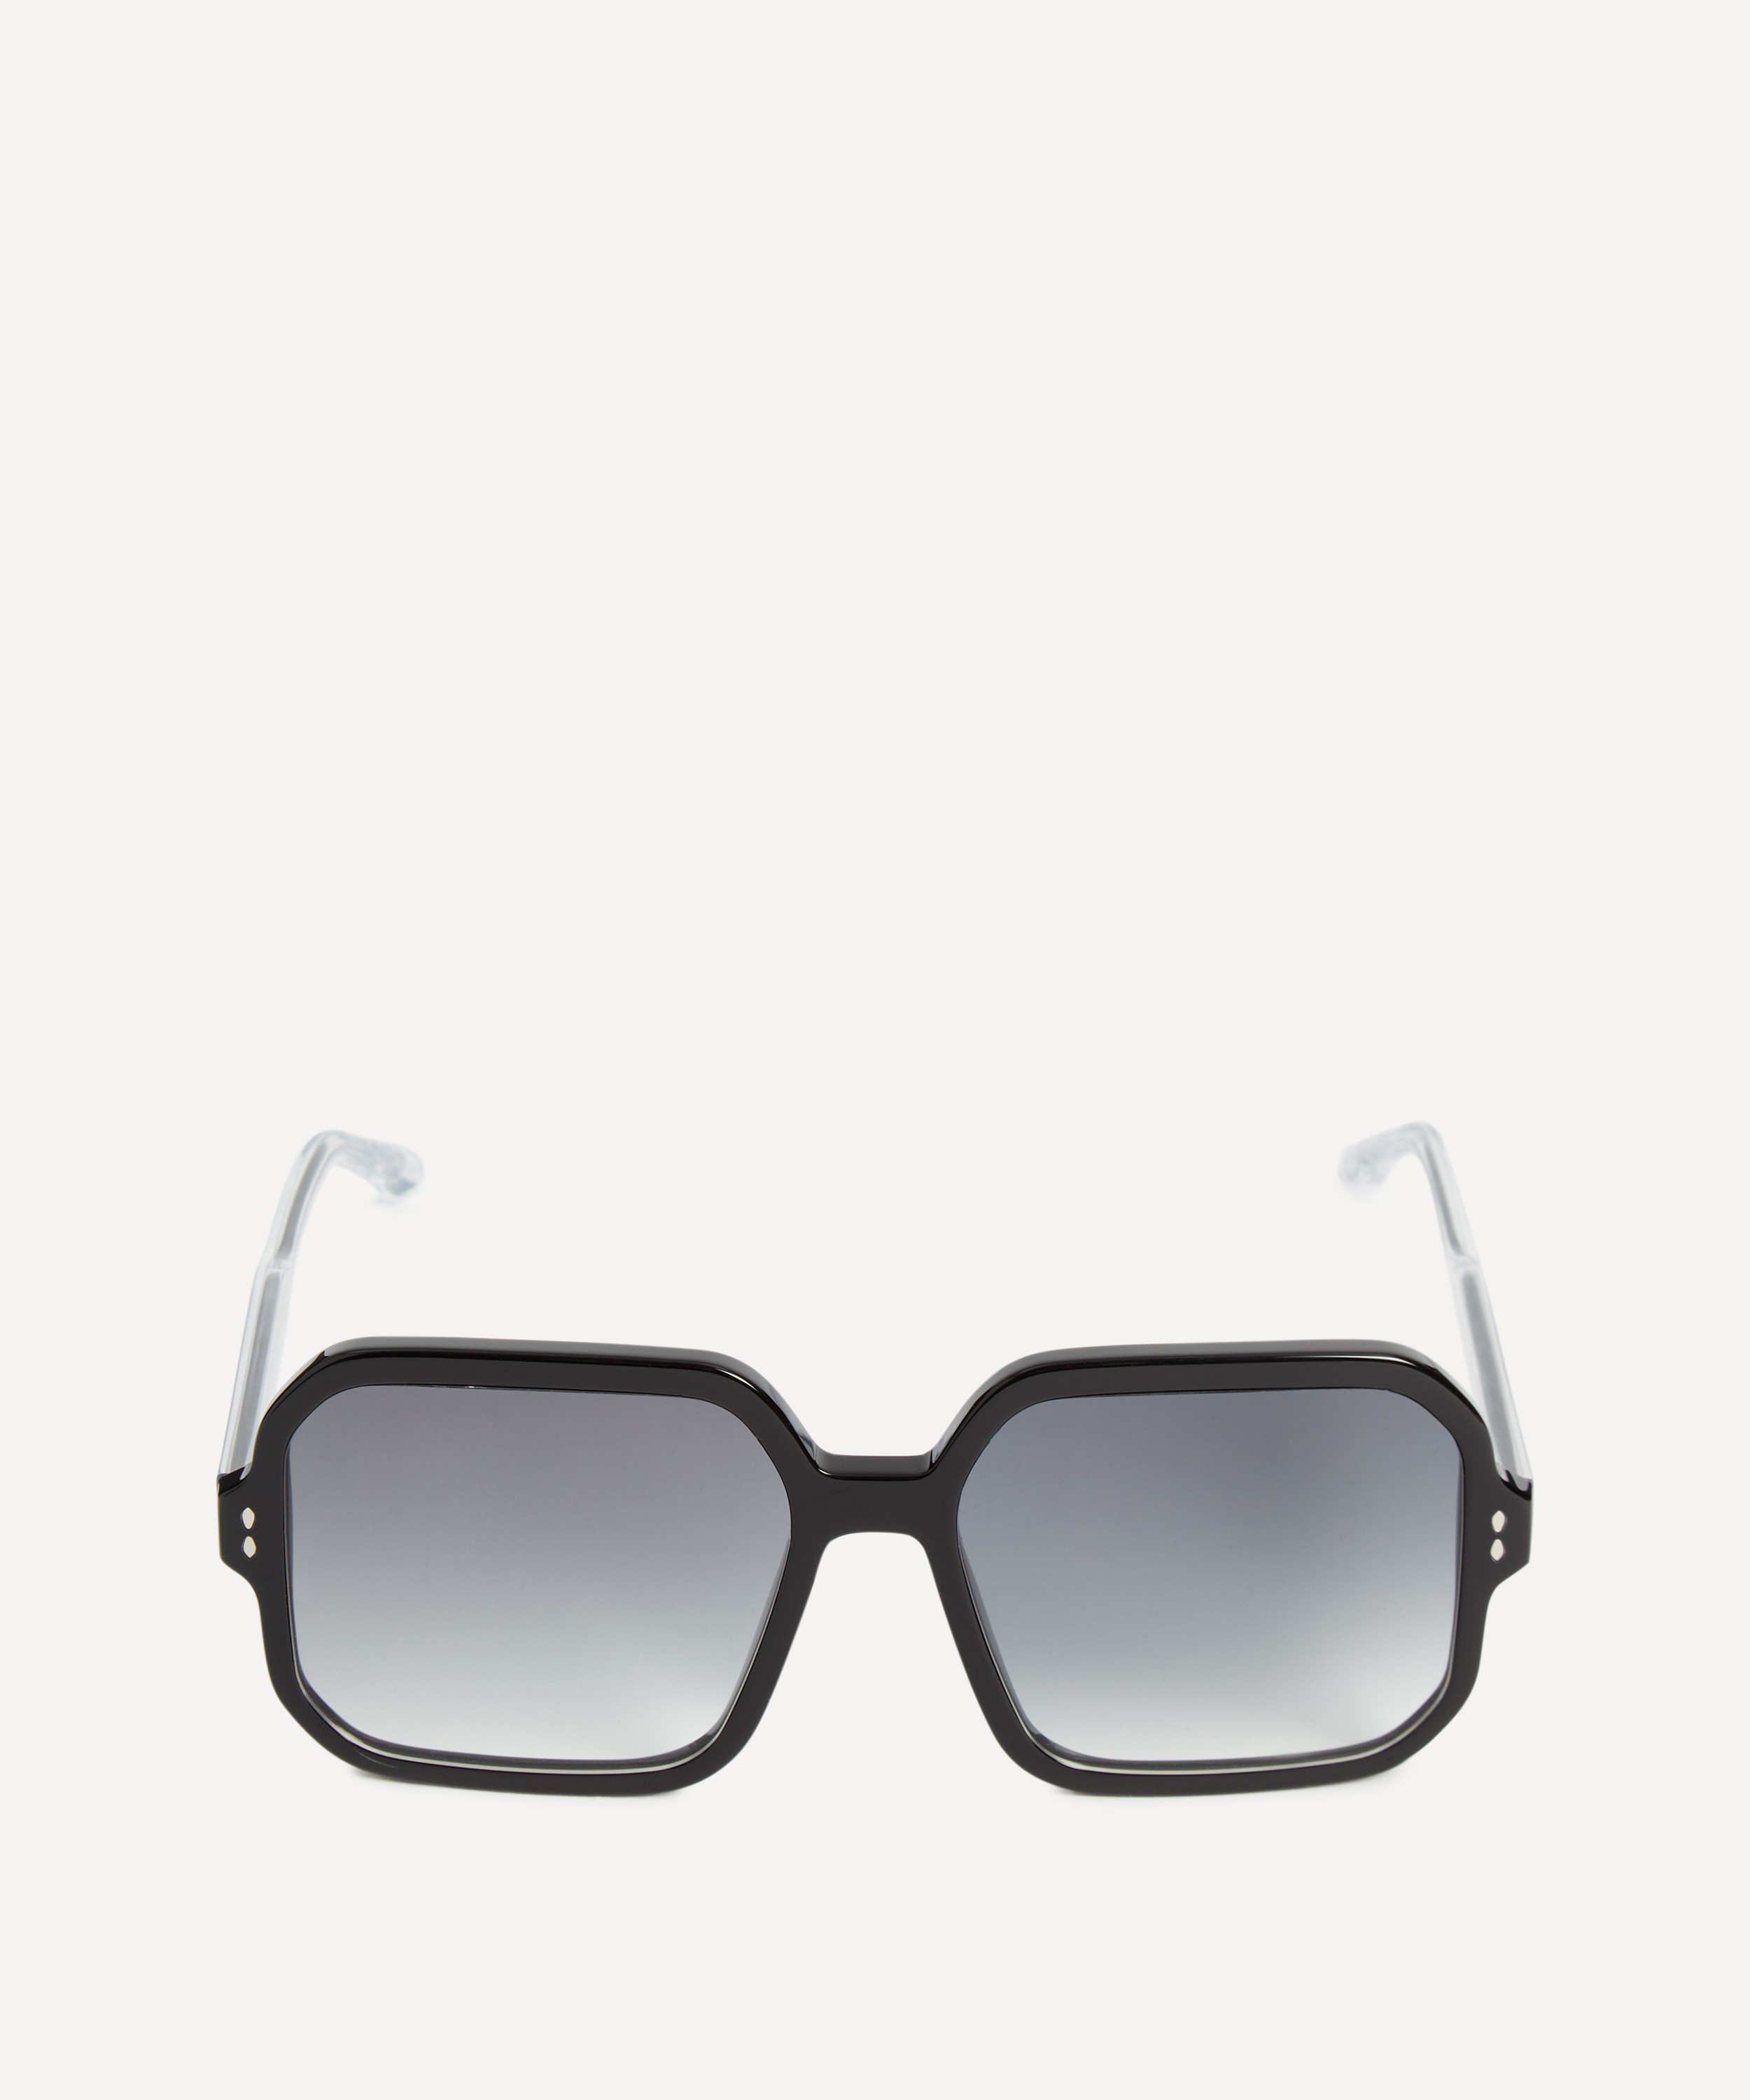 Isabel Marant - Oversized Square Sunglasses